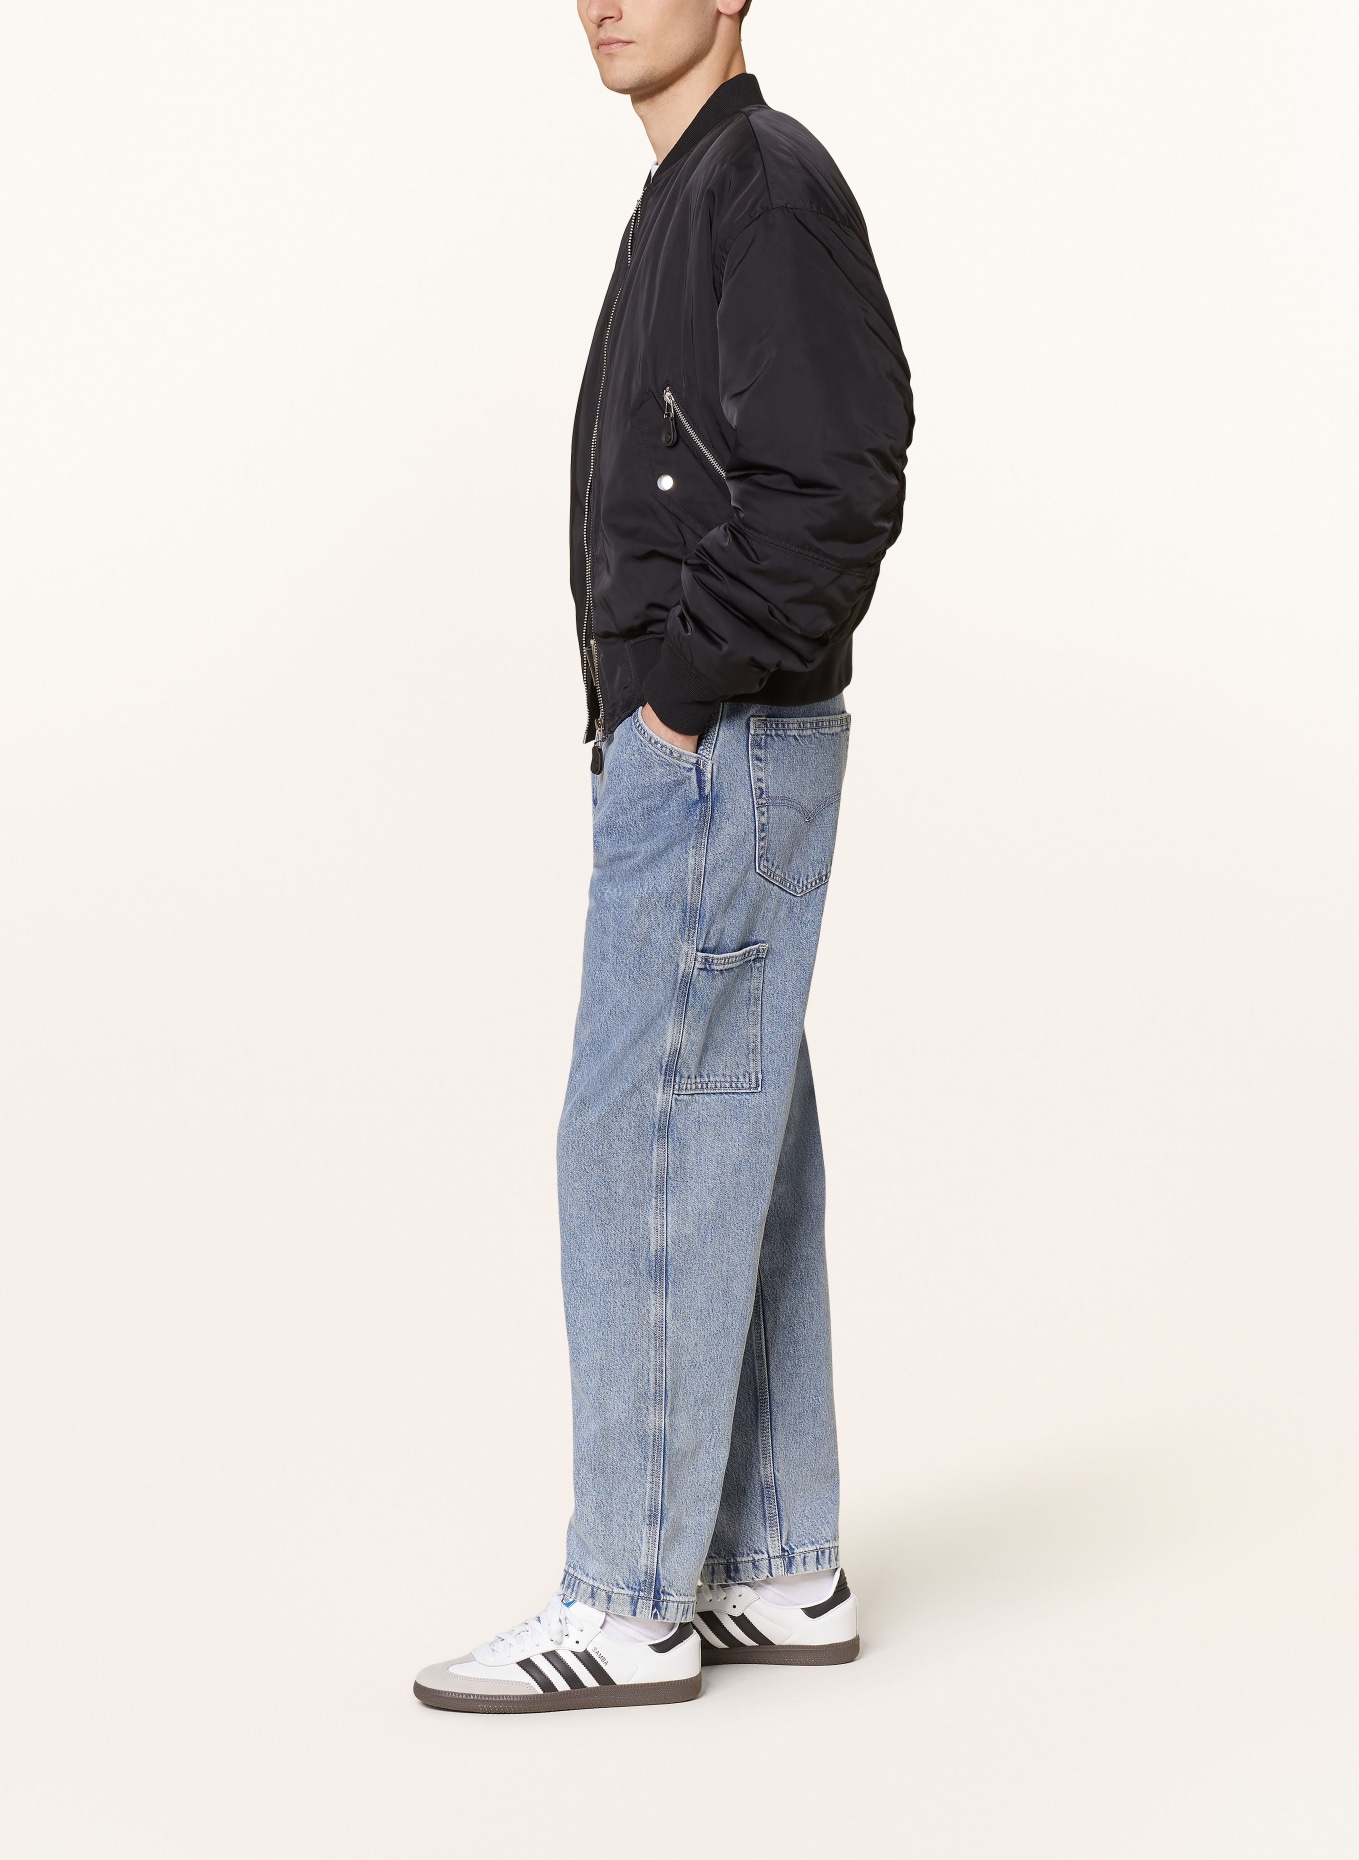 Levi's® Jeans 568 STAY LOOSE CARPENTER regular fit, Color: 47 Med Indigo - Flat Finish (Image 4)